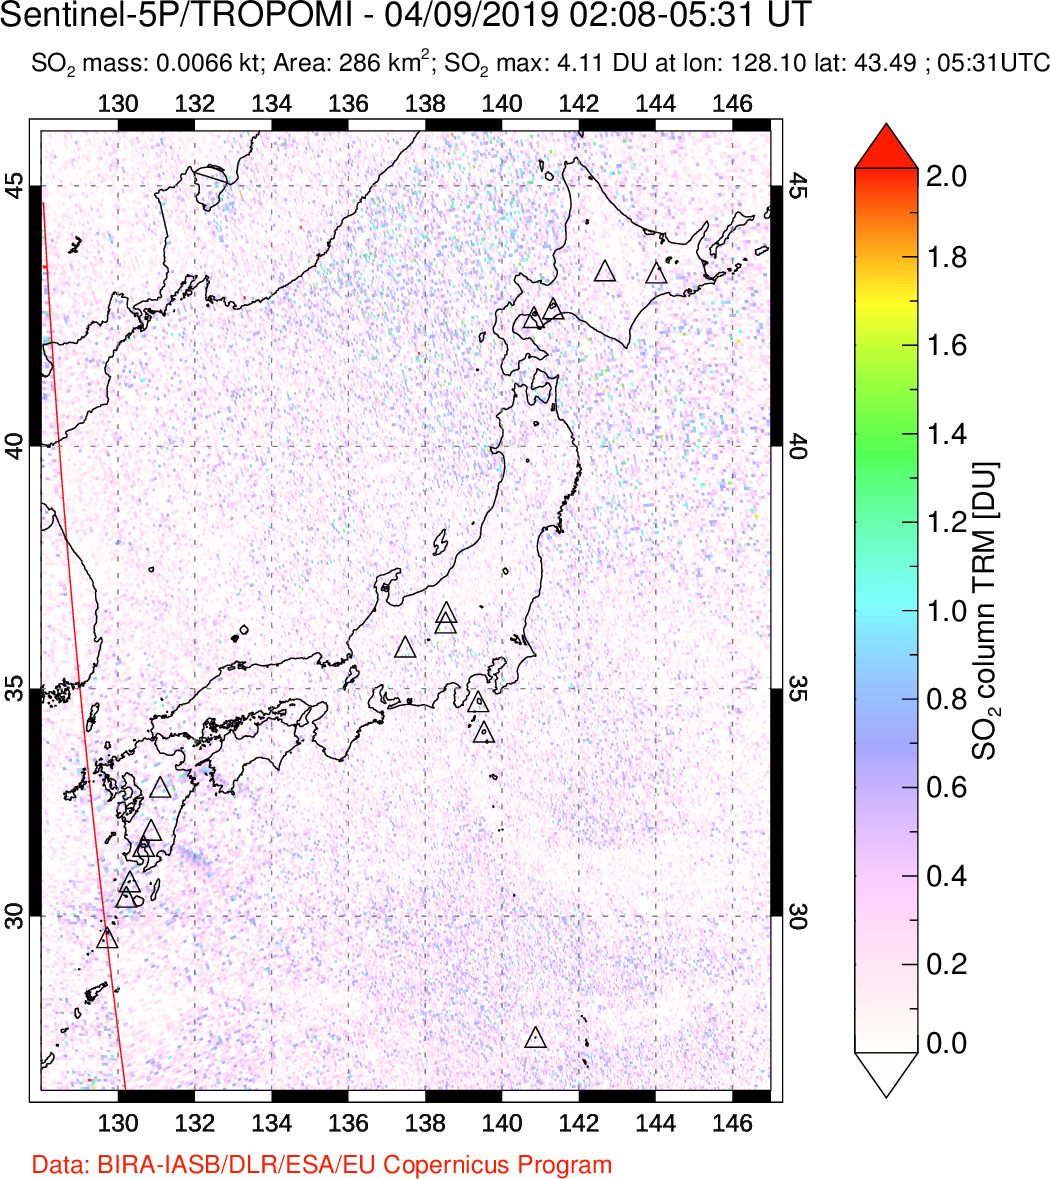 A sulfur dioxide image over Japan on Apr 09, 2019.